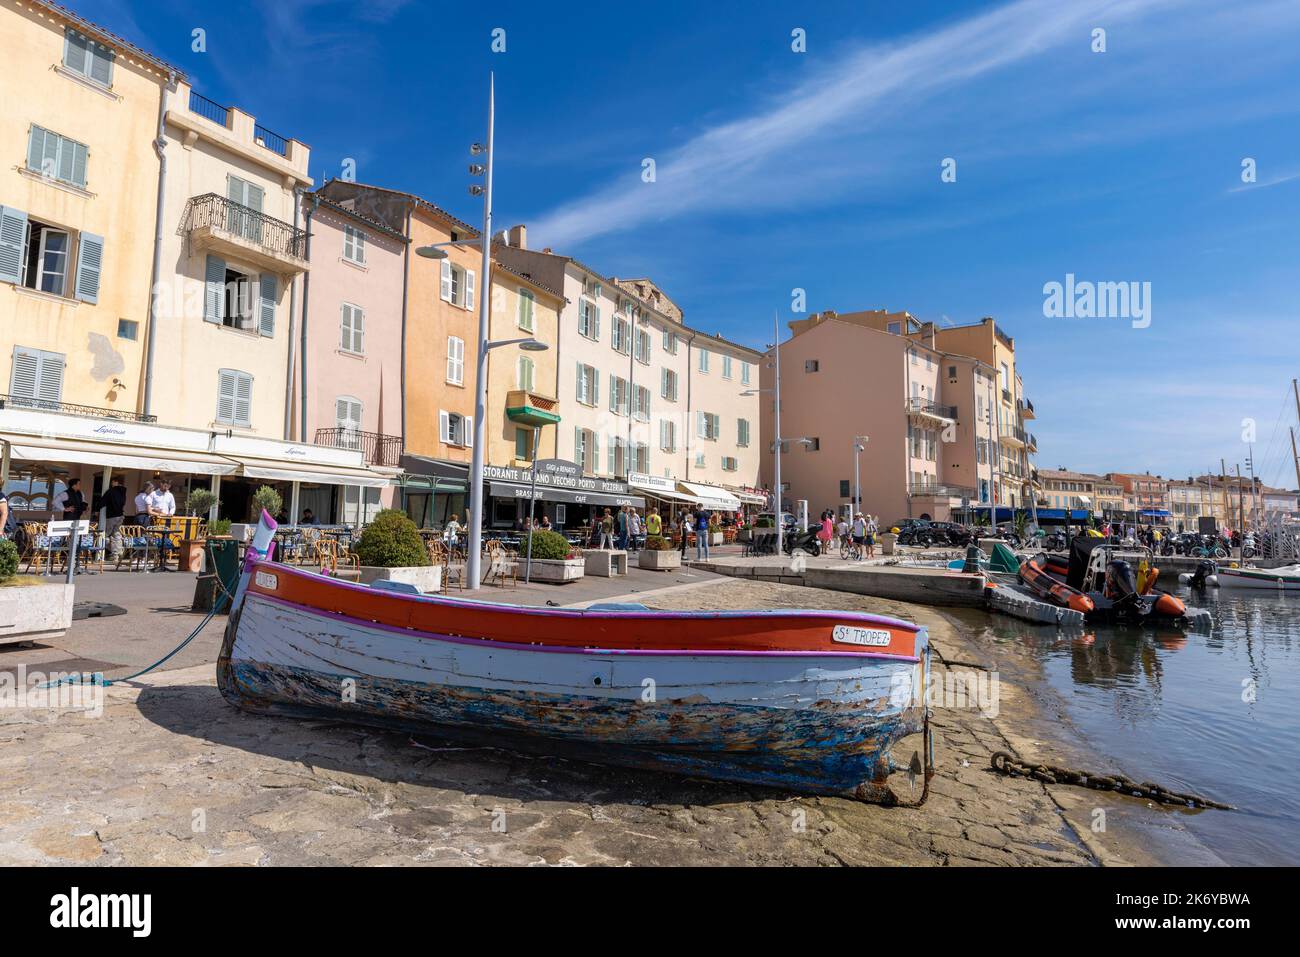 Saint-Tropez, Cote d'Azur, French Riviera, Provence, France.  The old fishing port.  Vieux port de peche. Stock Photo